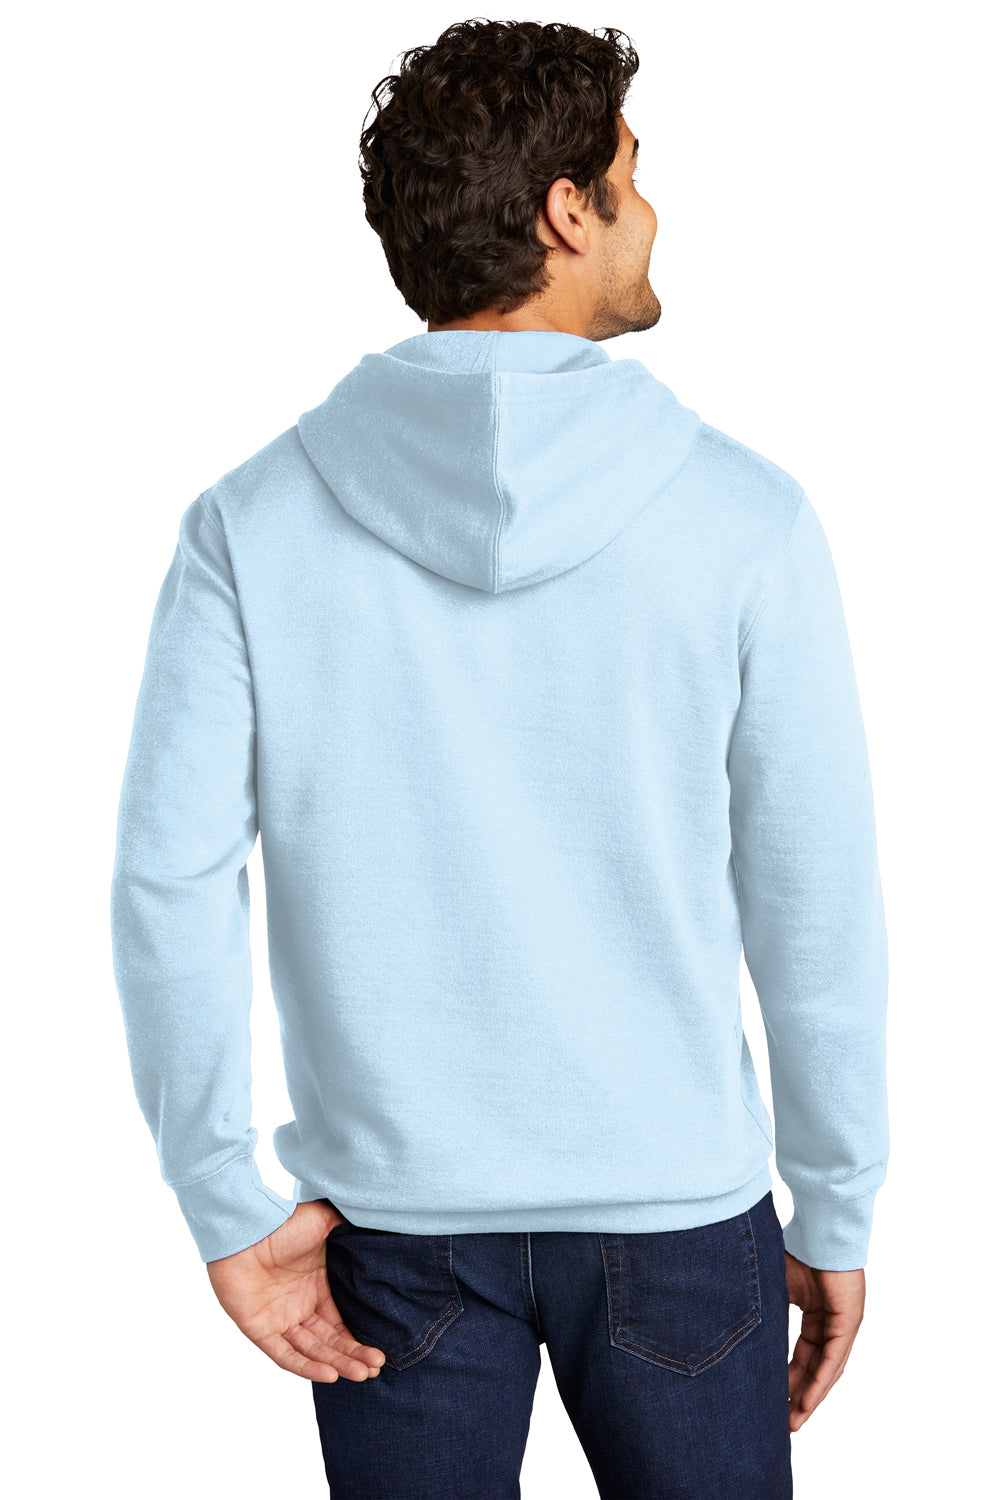 District Mens Very Important Fleece Hooded Sweatshirt Hoodie Ice Blue Side